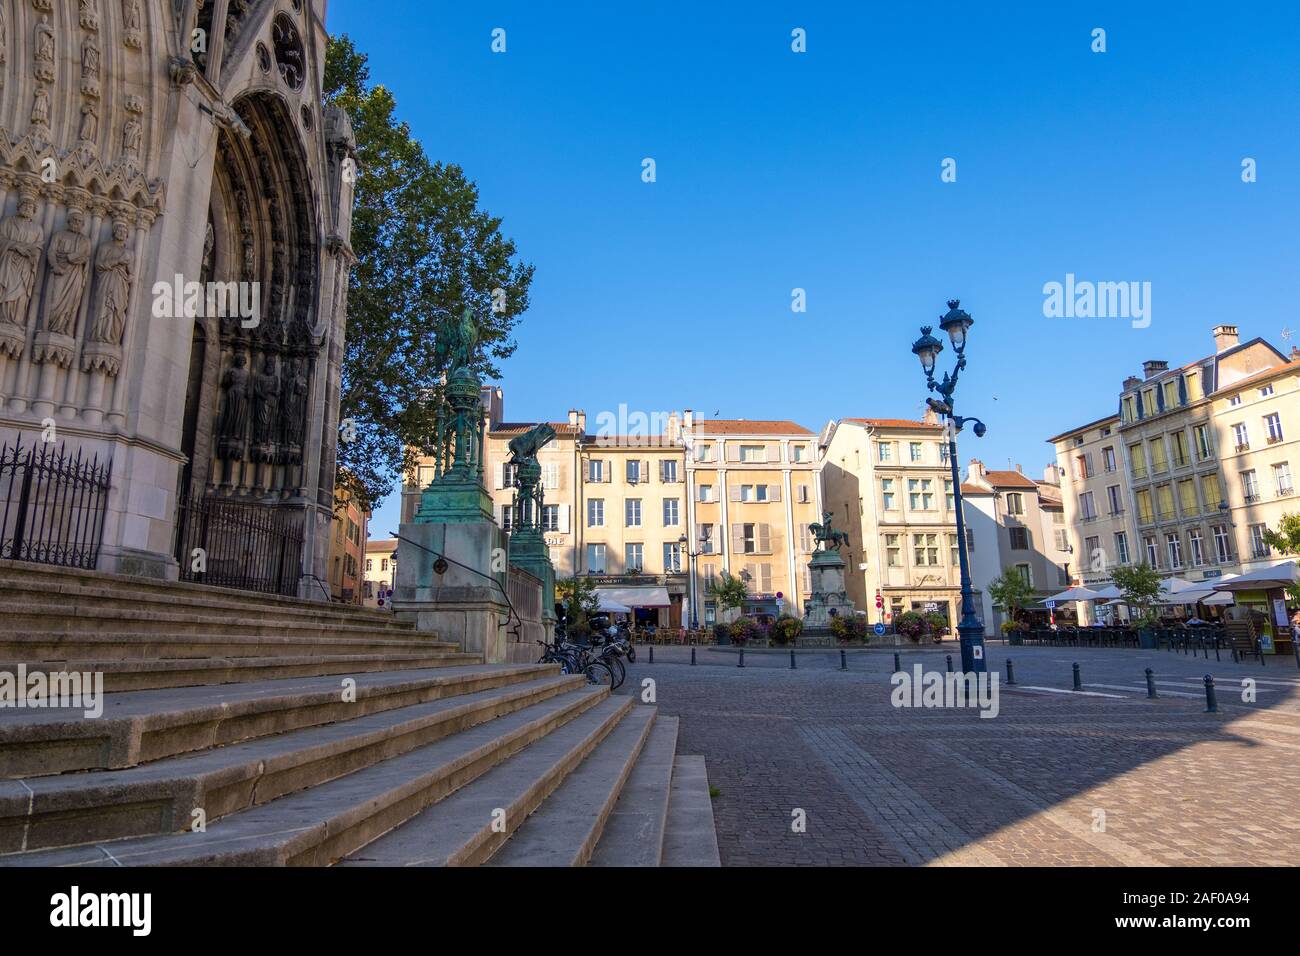 Nancy, France - 31 août 2019 : Fontain et statue équestre de René II Duc de Lorraine sur la Place Saint Epvre à Nancy, France Banque D'Images